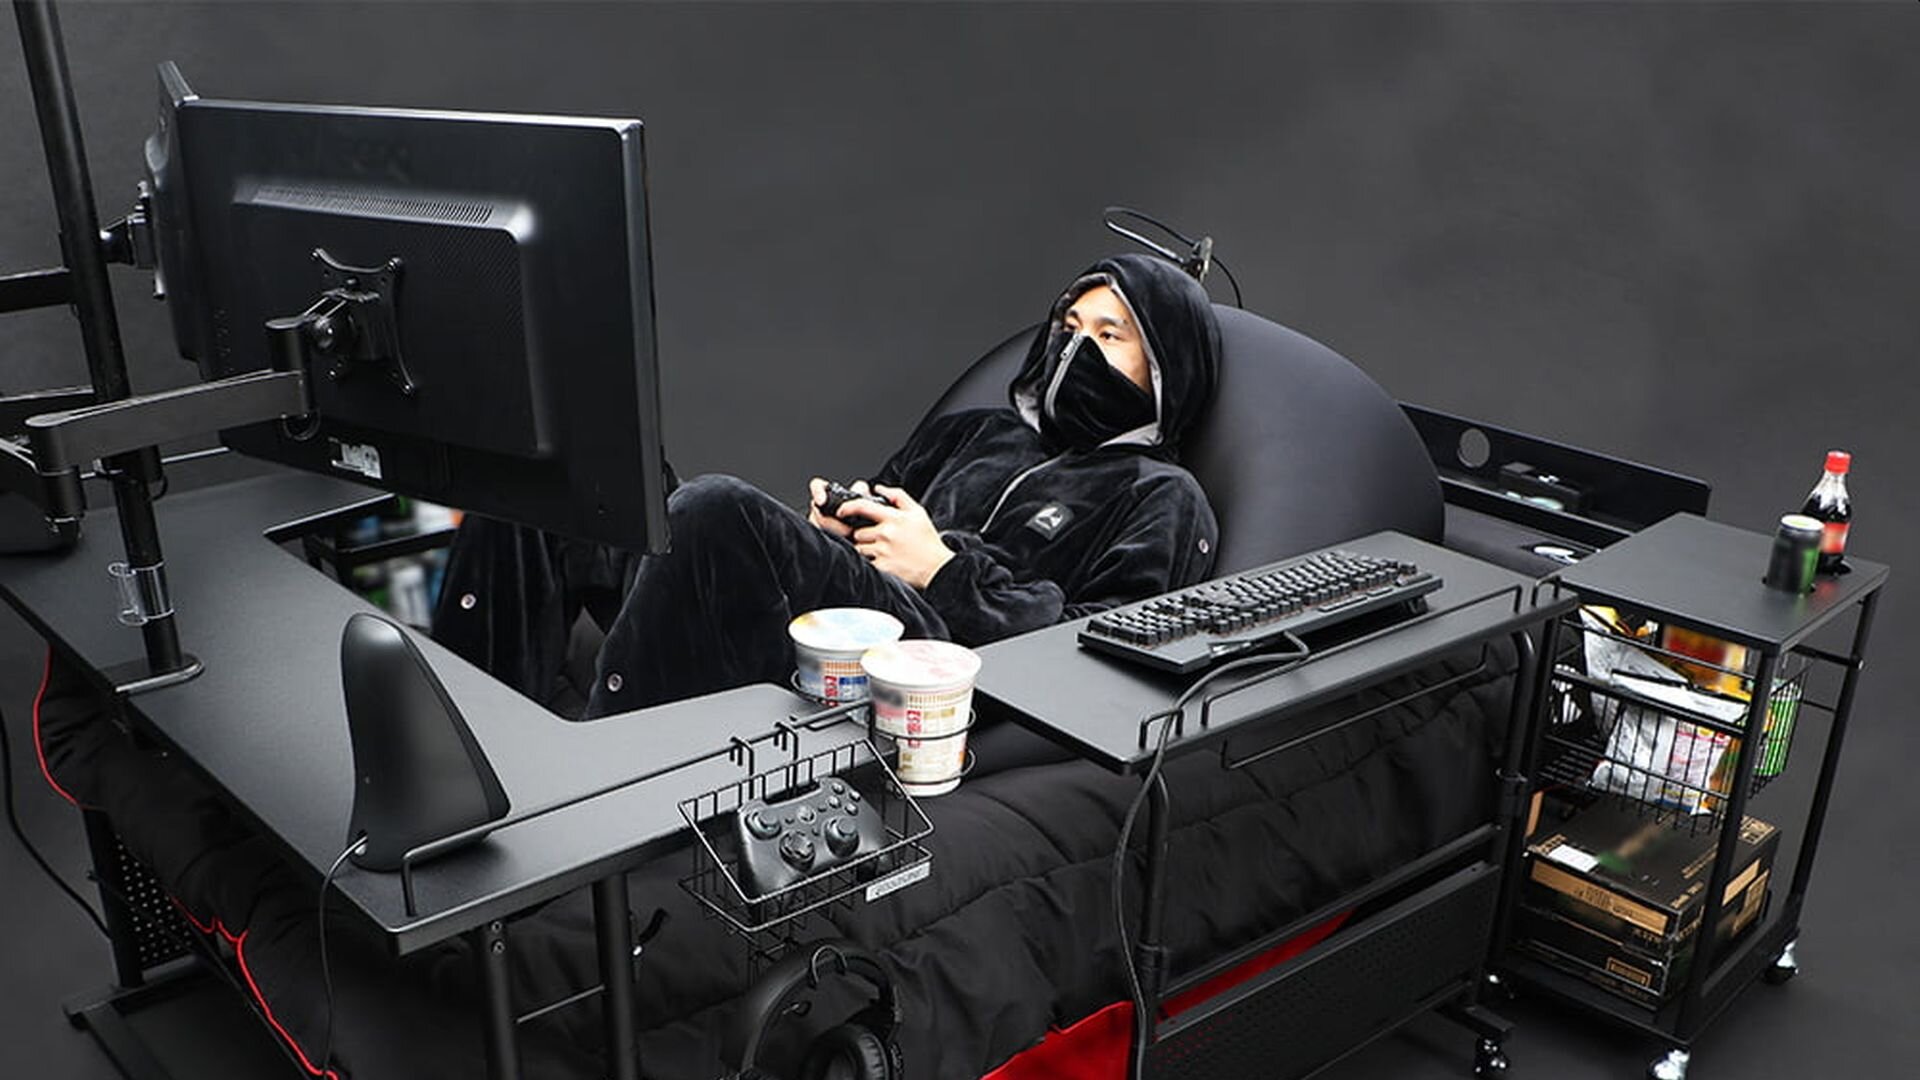 Japanese Furniture Manufacturer Makes Cool Gaming Bed Geektyrant